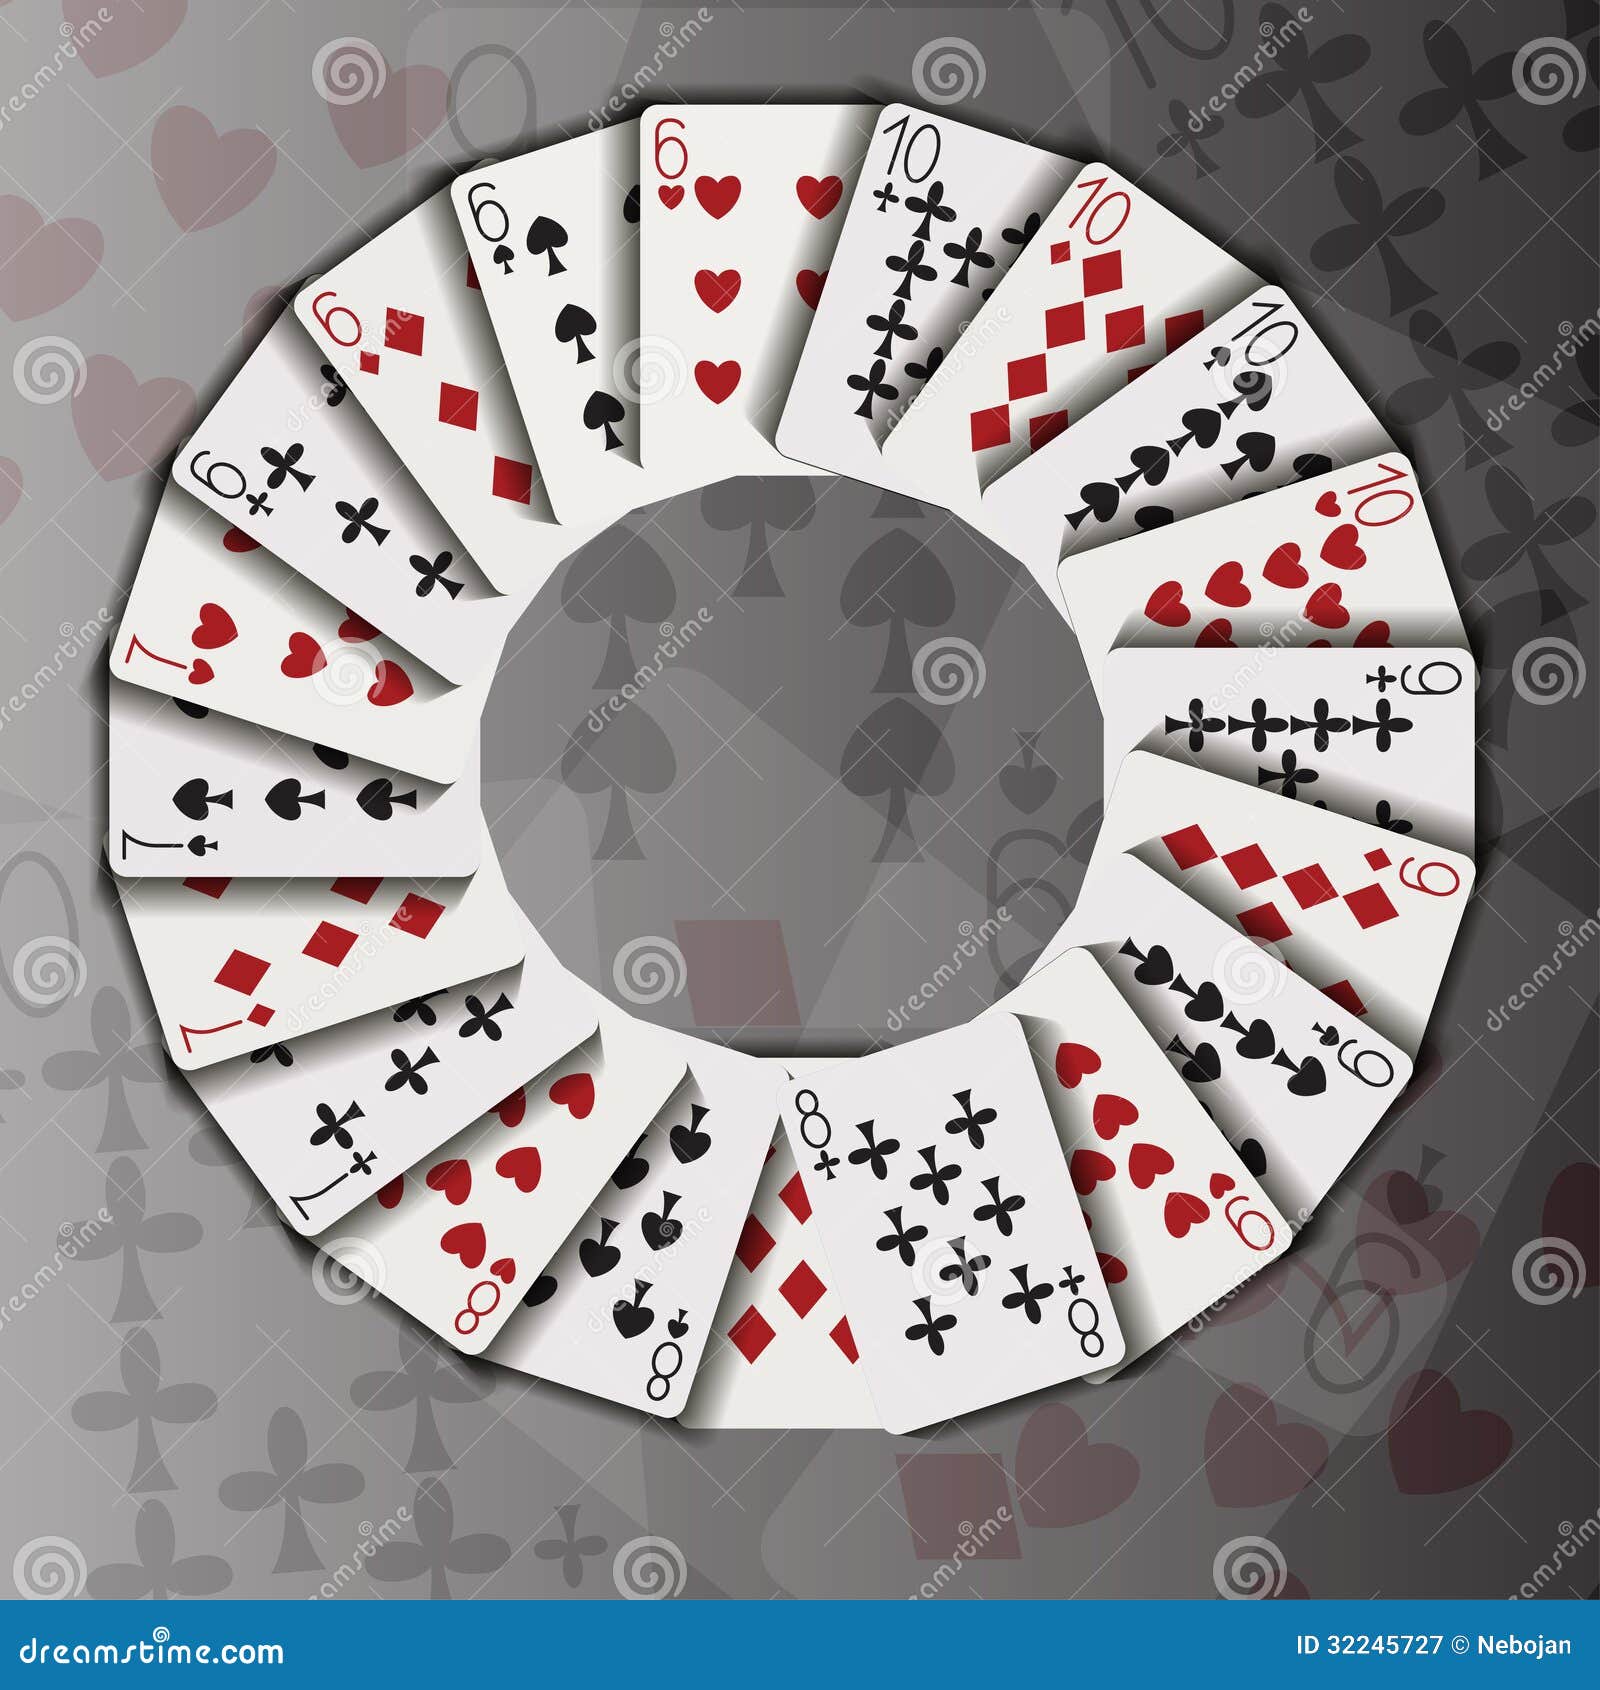 В 4 кругах разложено 7 карт. Карточный круг. Карточная игра по кругу. Игральные карты кругом. Карты разложенные по кругу.